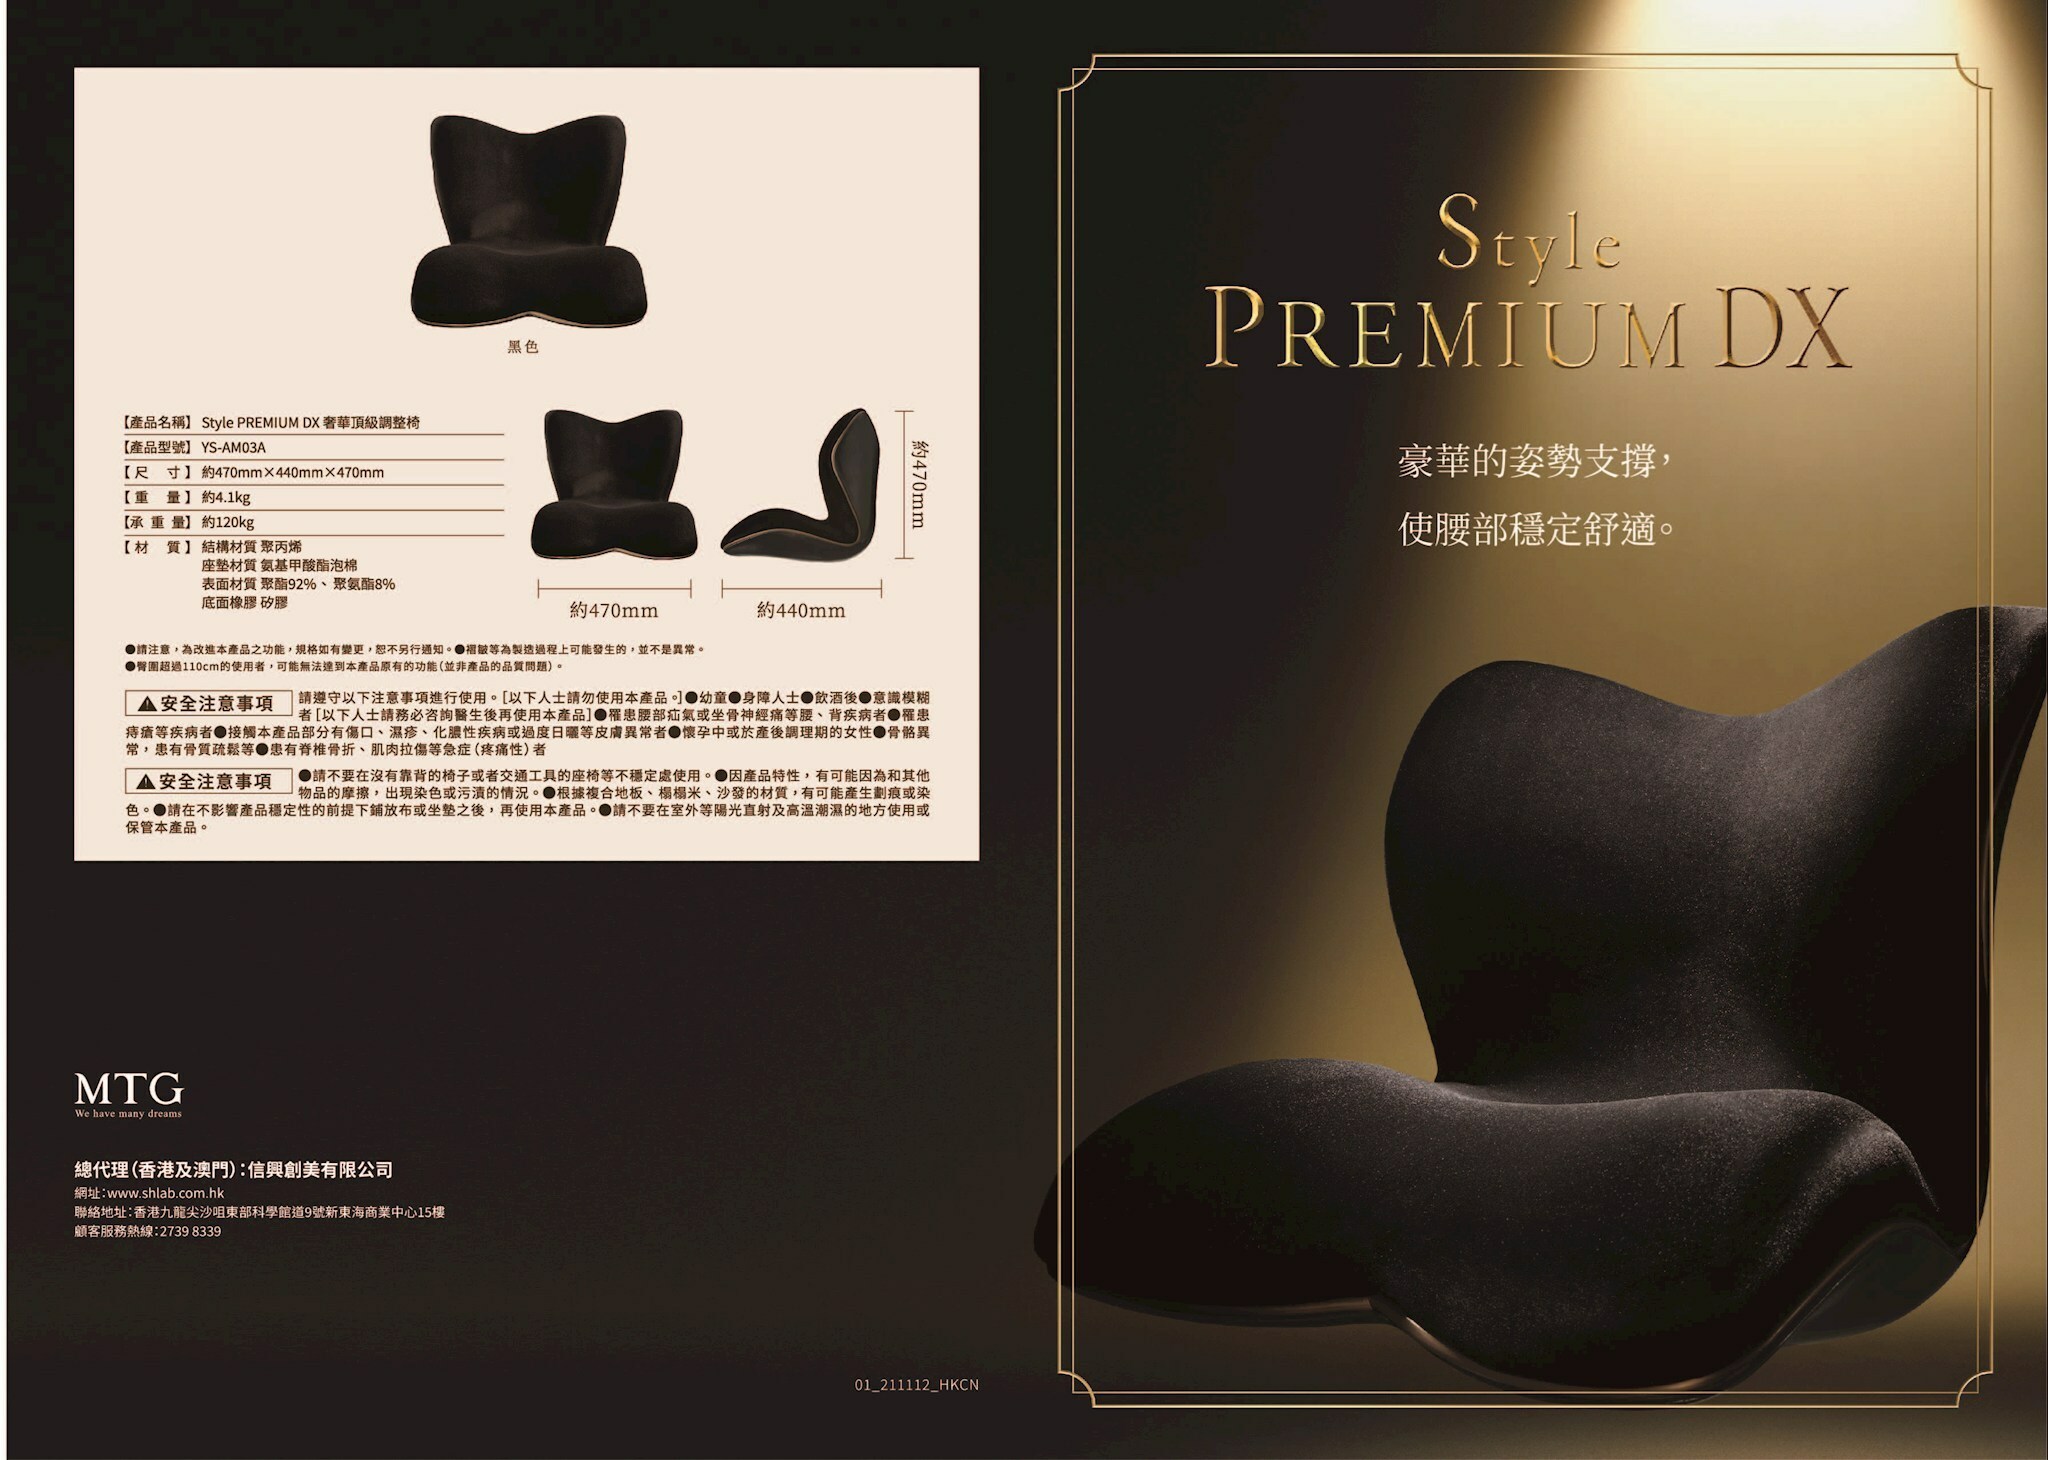 商品の重量5キログラムStyle PREMIUM DX MTG姿勢矯正 骨盤サポートチェア 座椅子